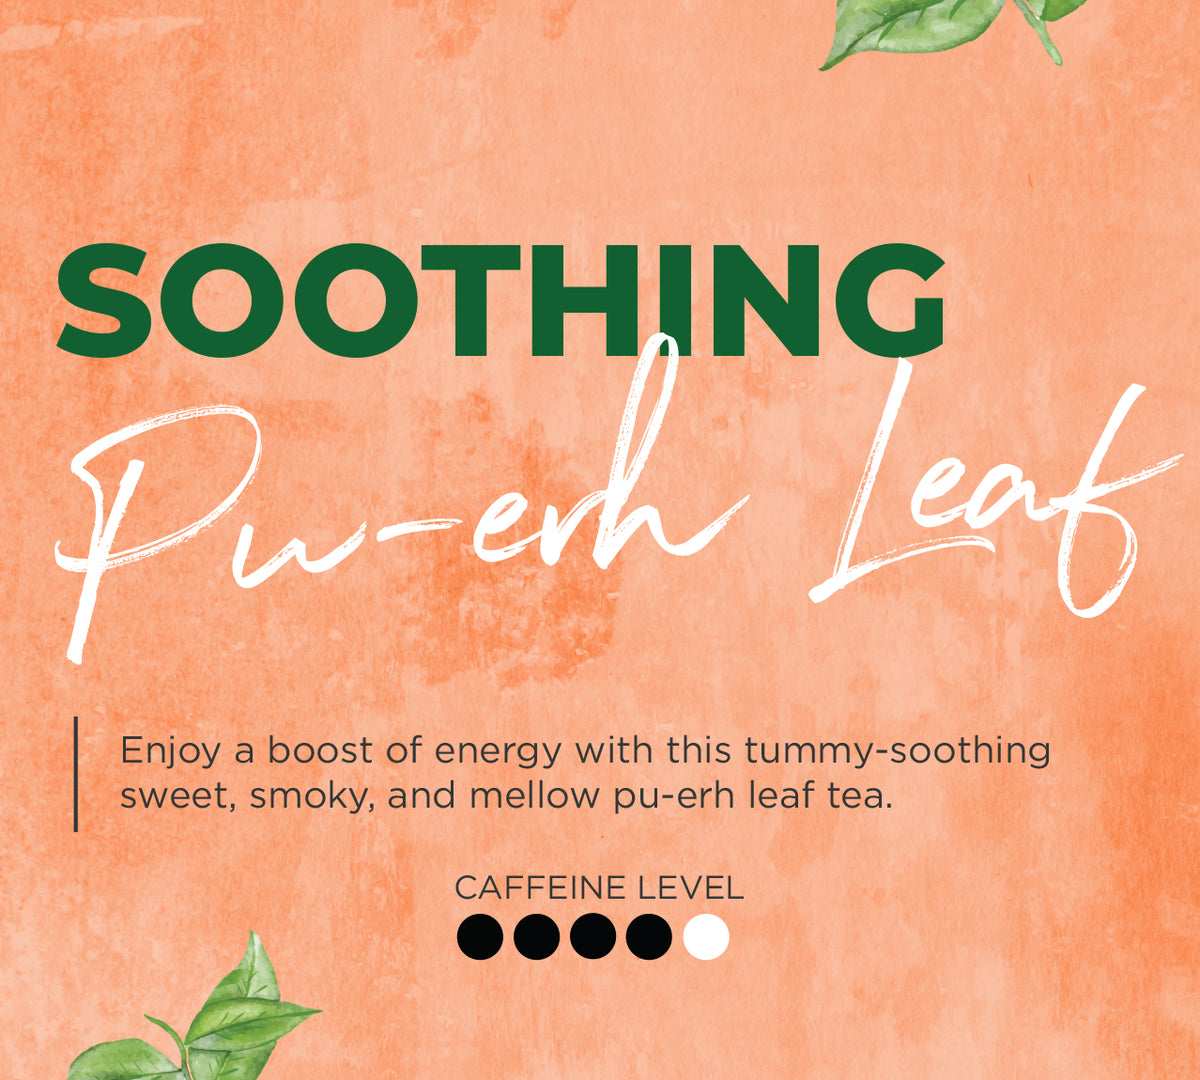 Soothing Pu’erh Leaf